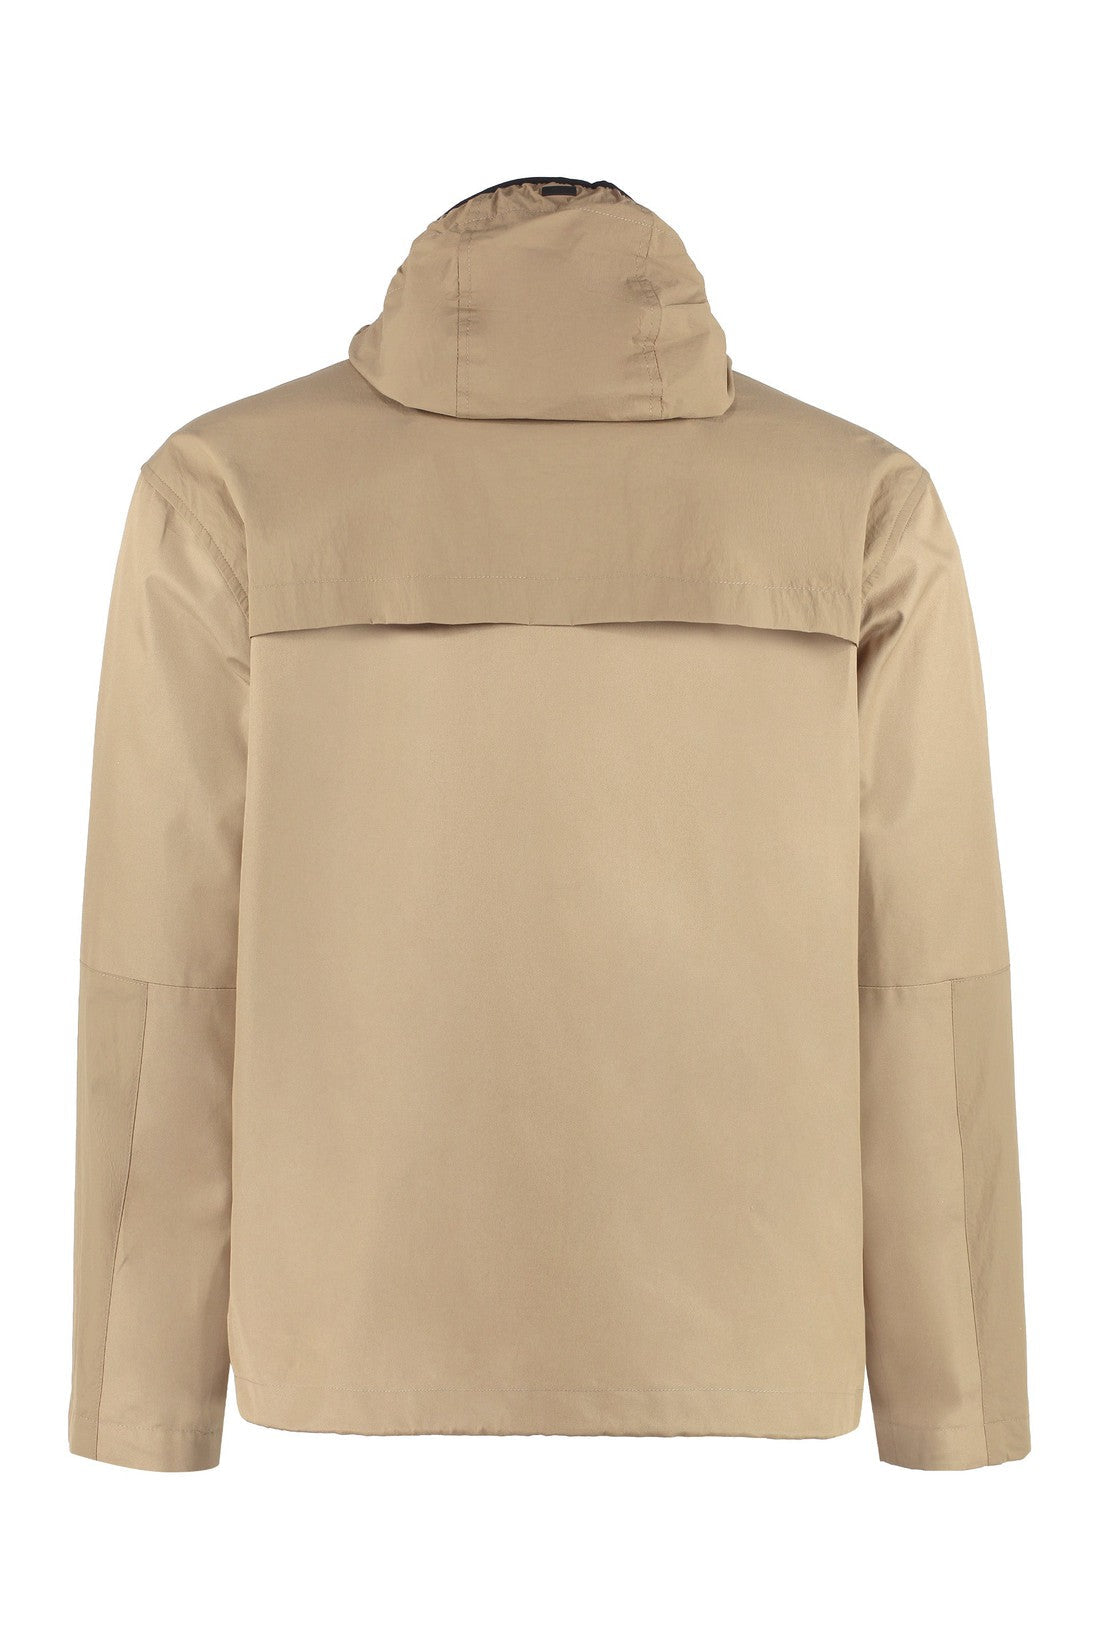 Herno-OUTLET-SALE-Multi-pocket cotton jacket-ARCHIVIST